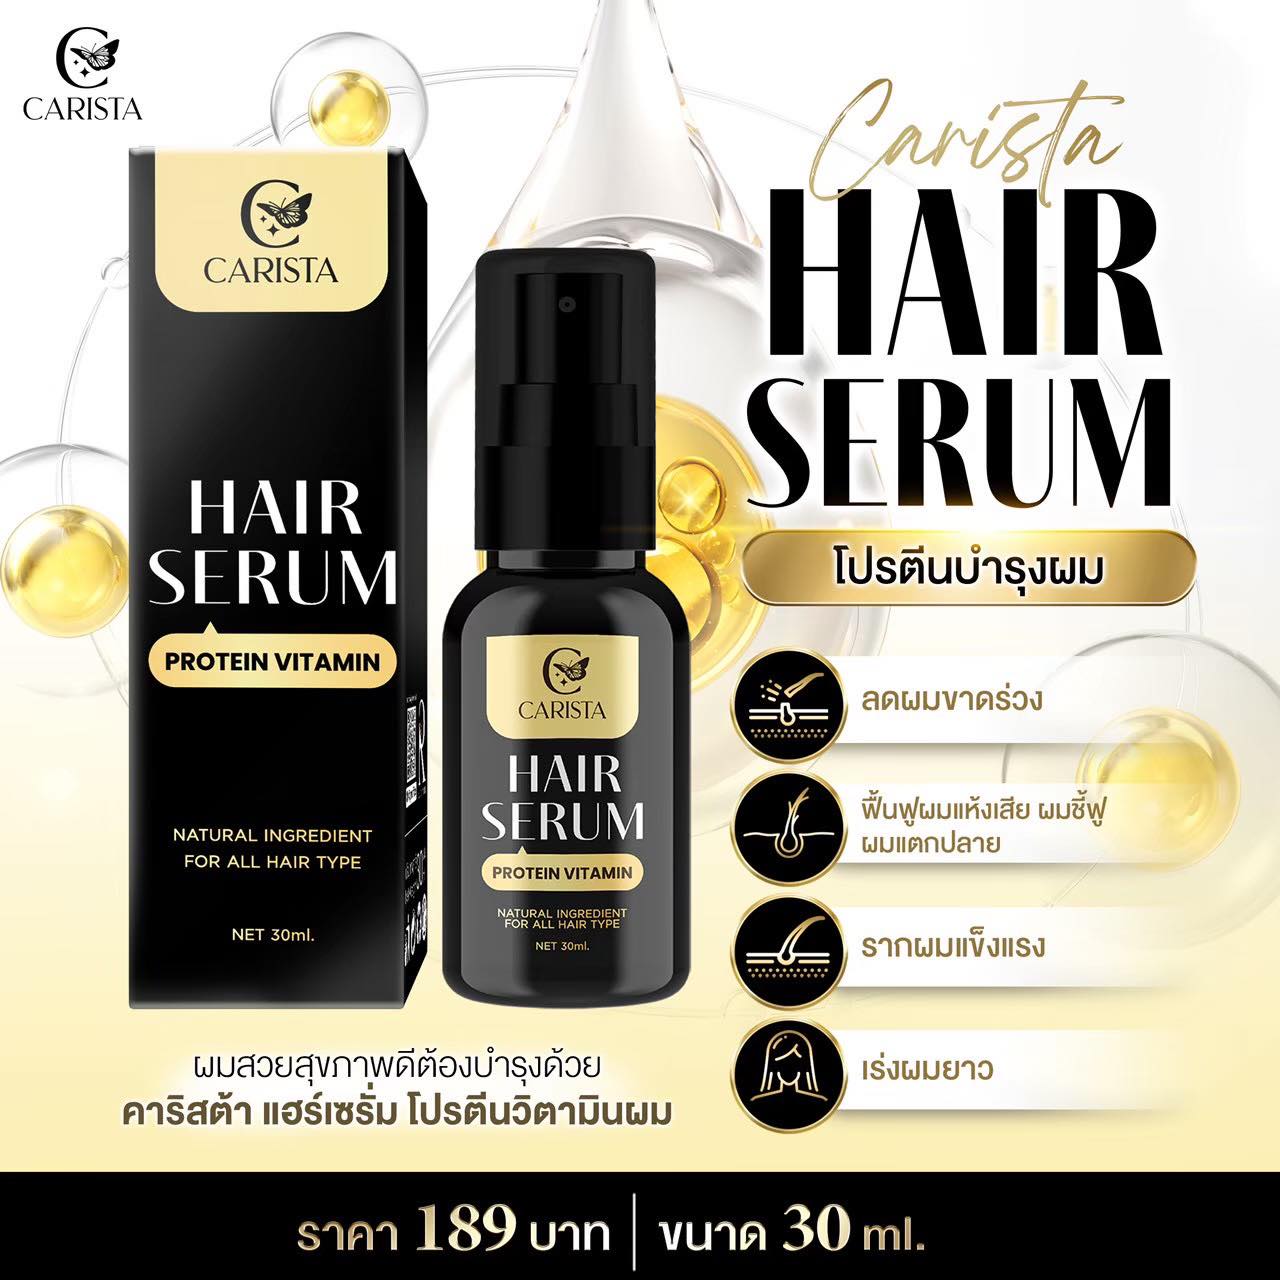 Hair Serum Protein Vitamin 30 ml.